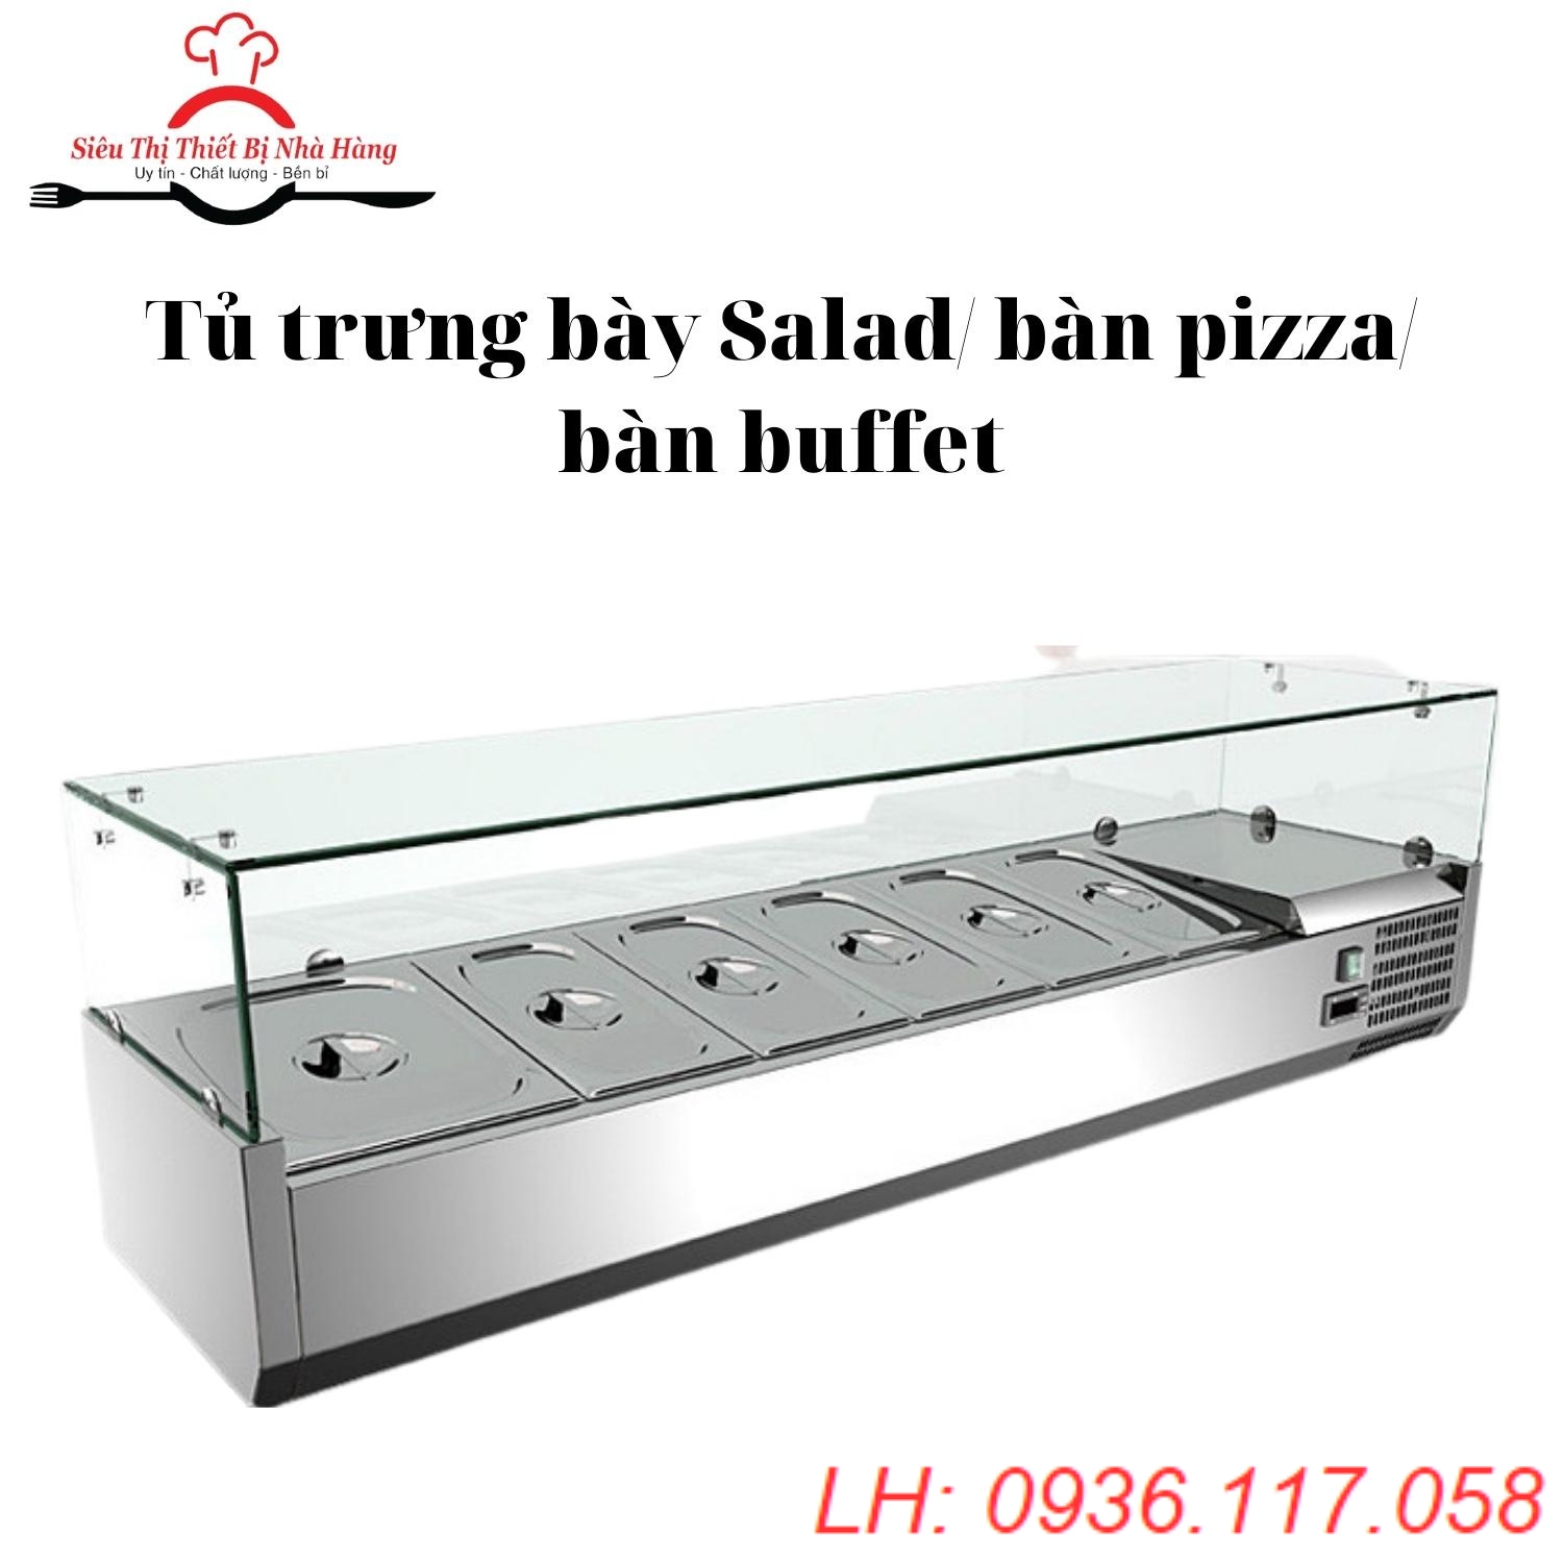 Tủ trưng bày và bảo quản pizza, salad 6 khay